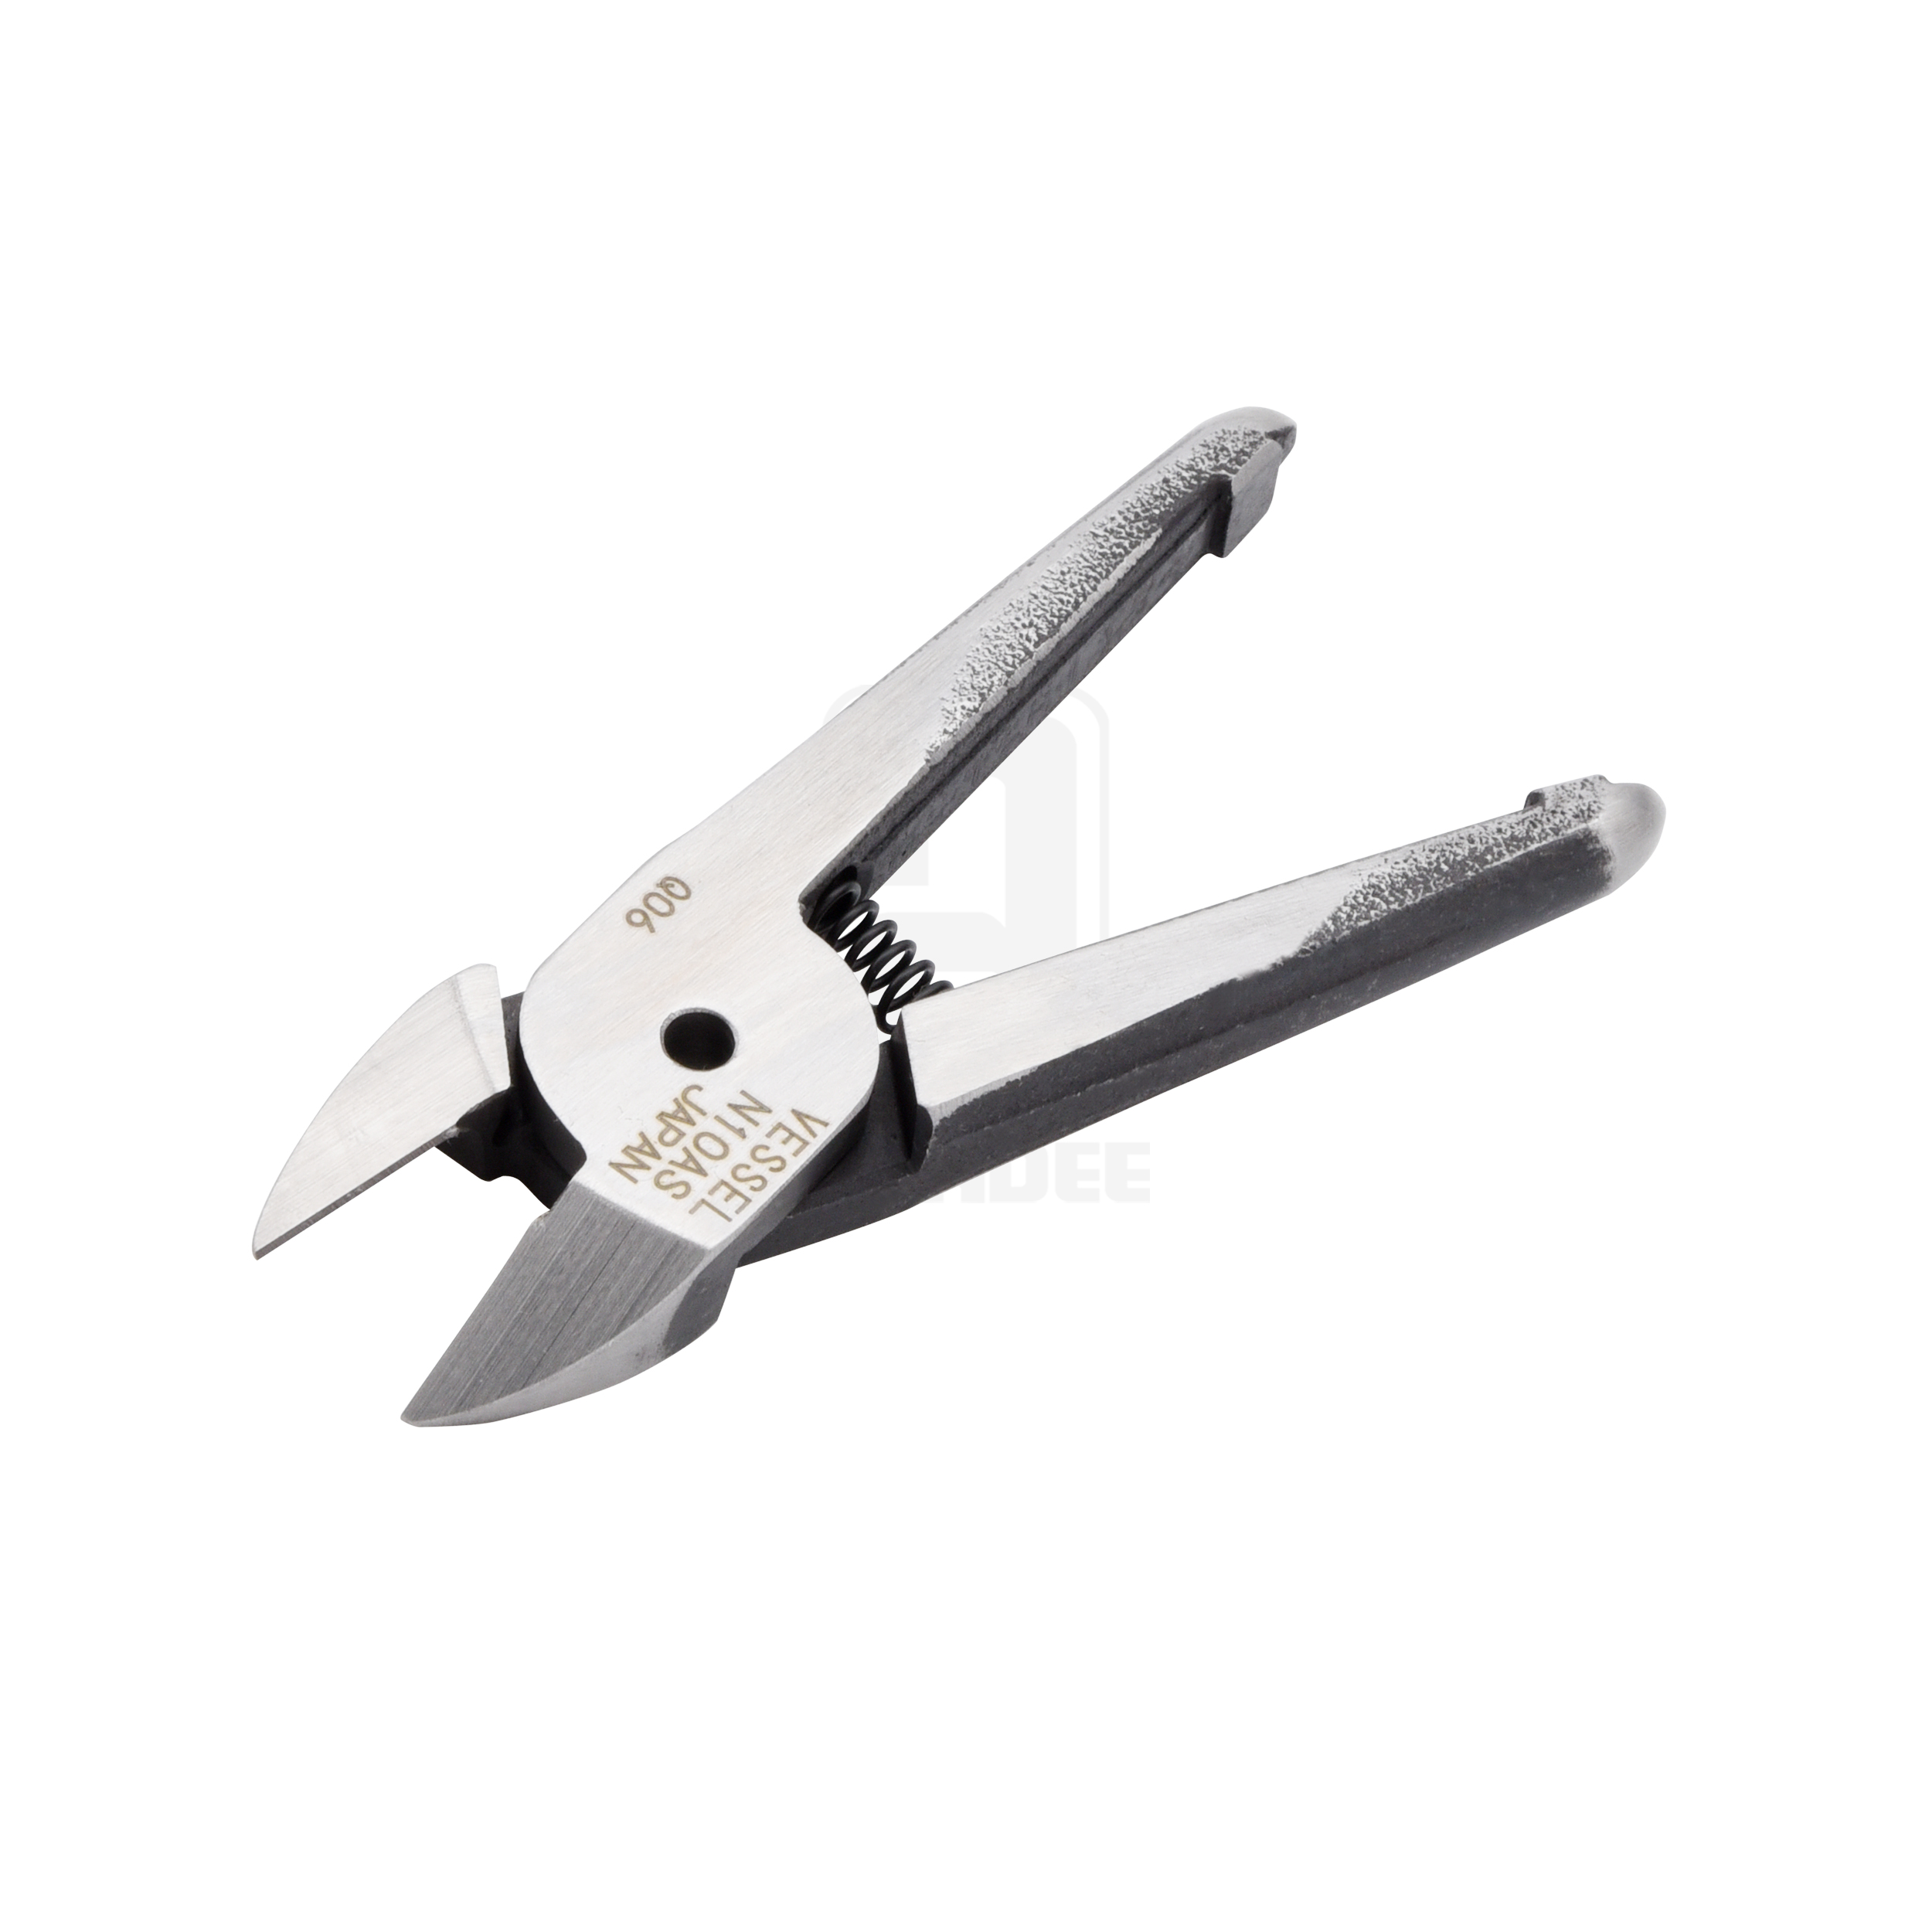 ปากกรรไกร Standard blades for metals สำหรับ cutting and crimping